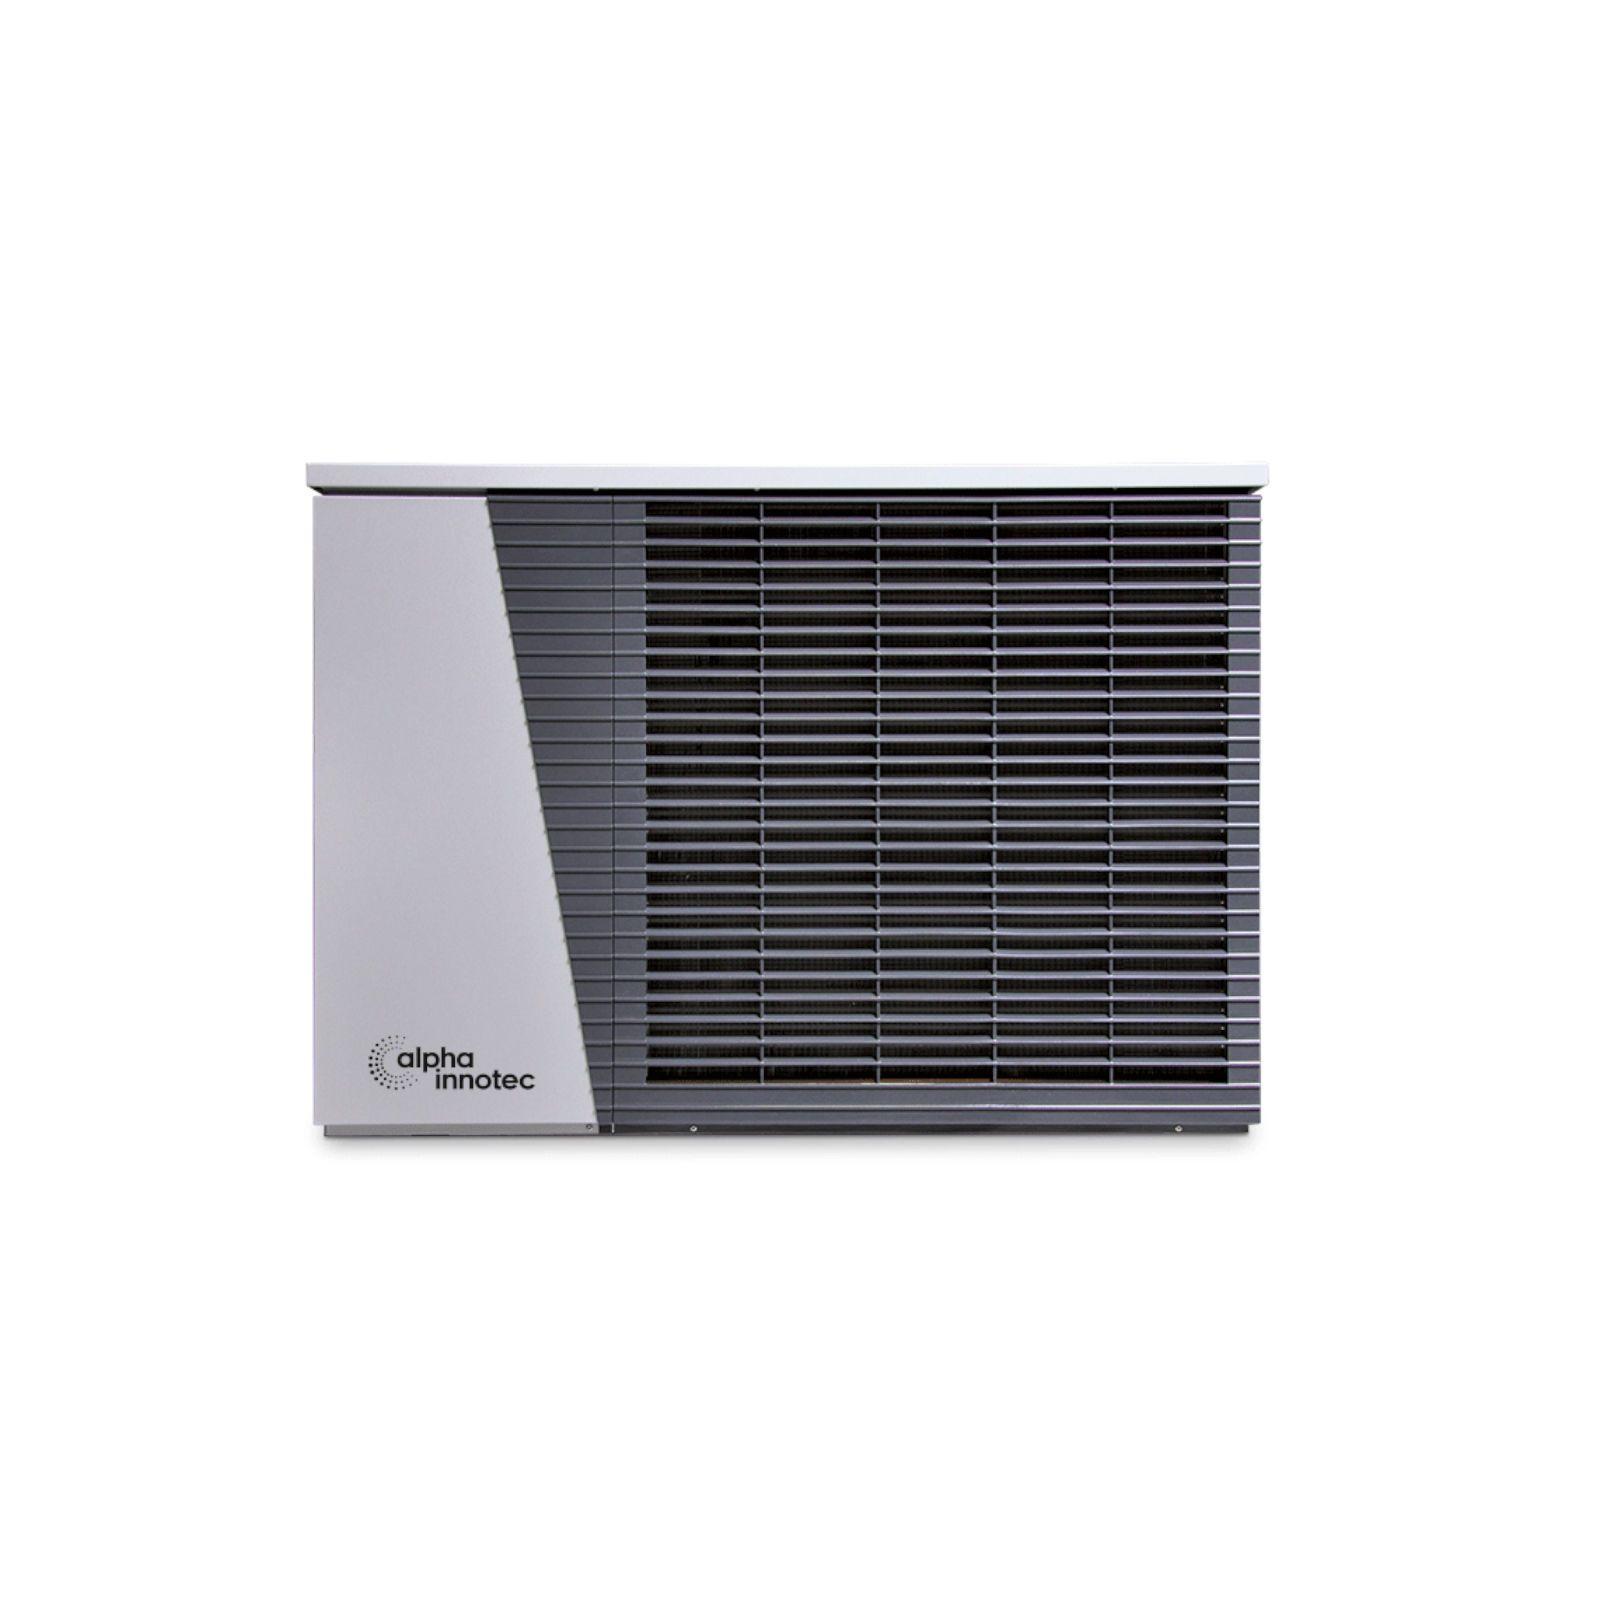 ThermCube Premium Plus All-in-One Luft-Wasser Wärmepumpen System Speicheranschluss links